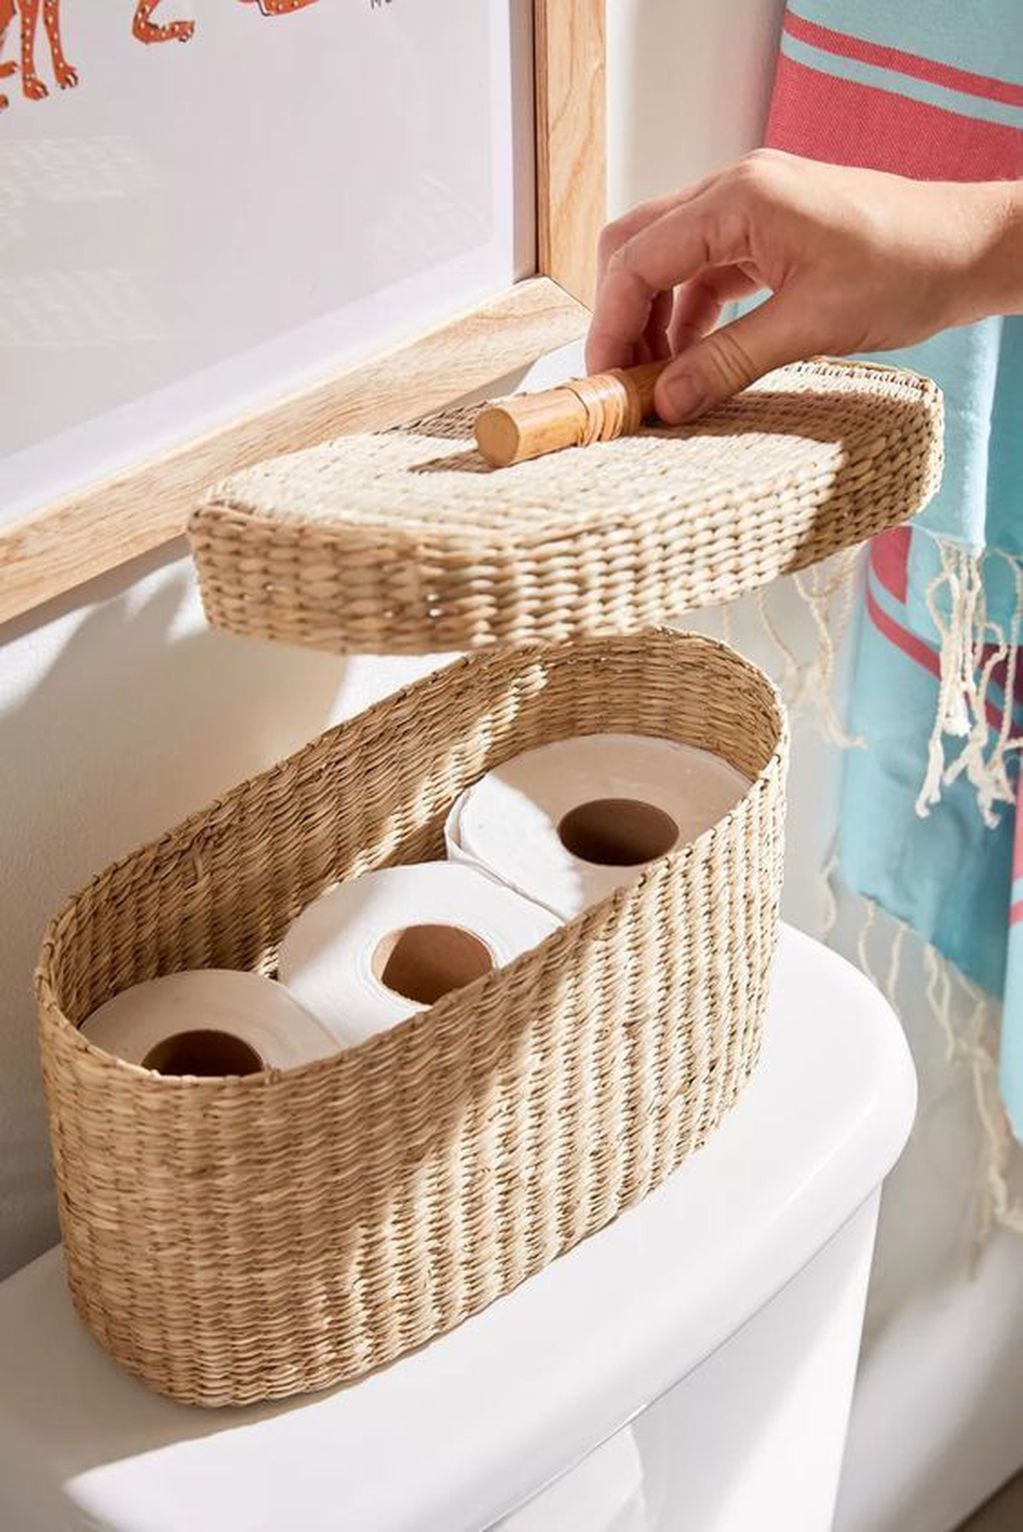 Elementos decorativos para transformar tu baño: cesto de mimbre para el papel higiénico. 